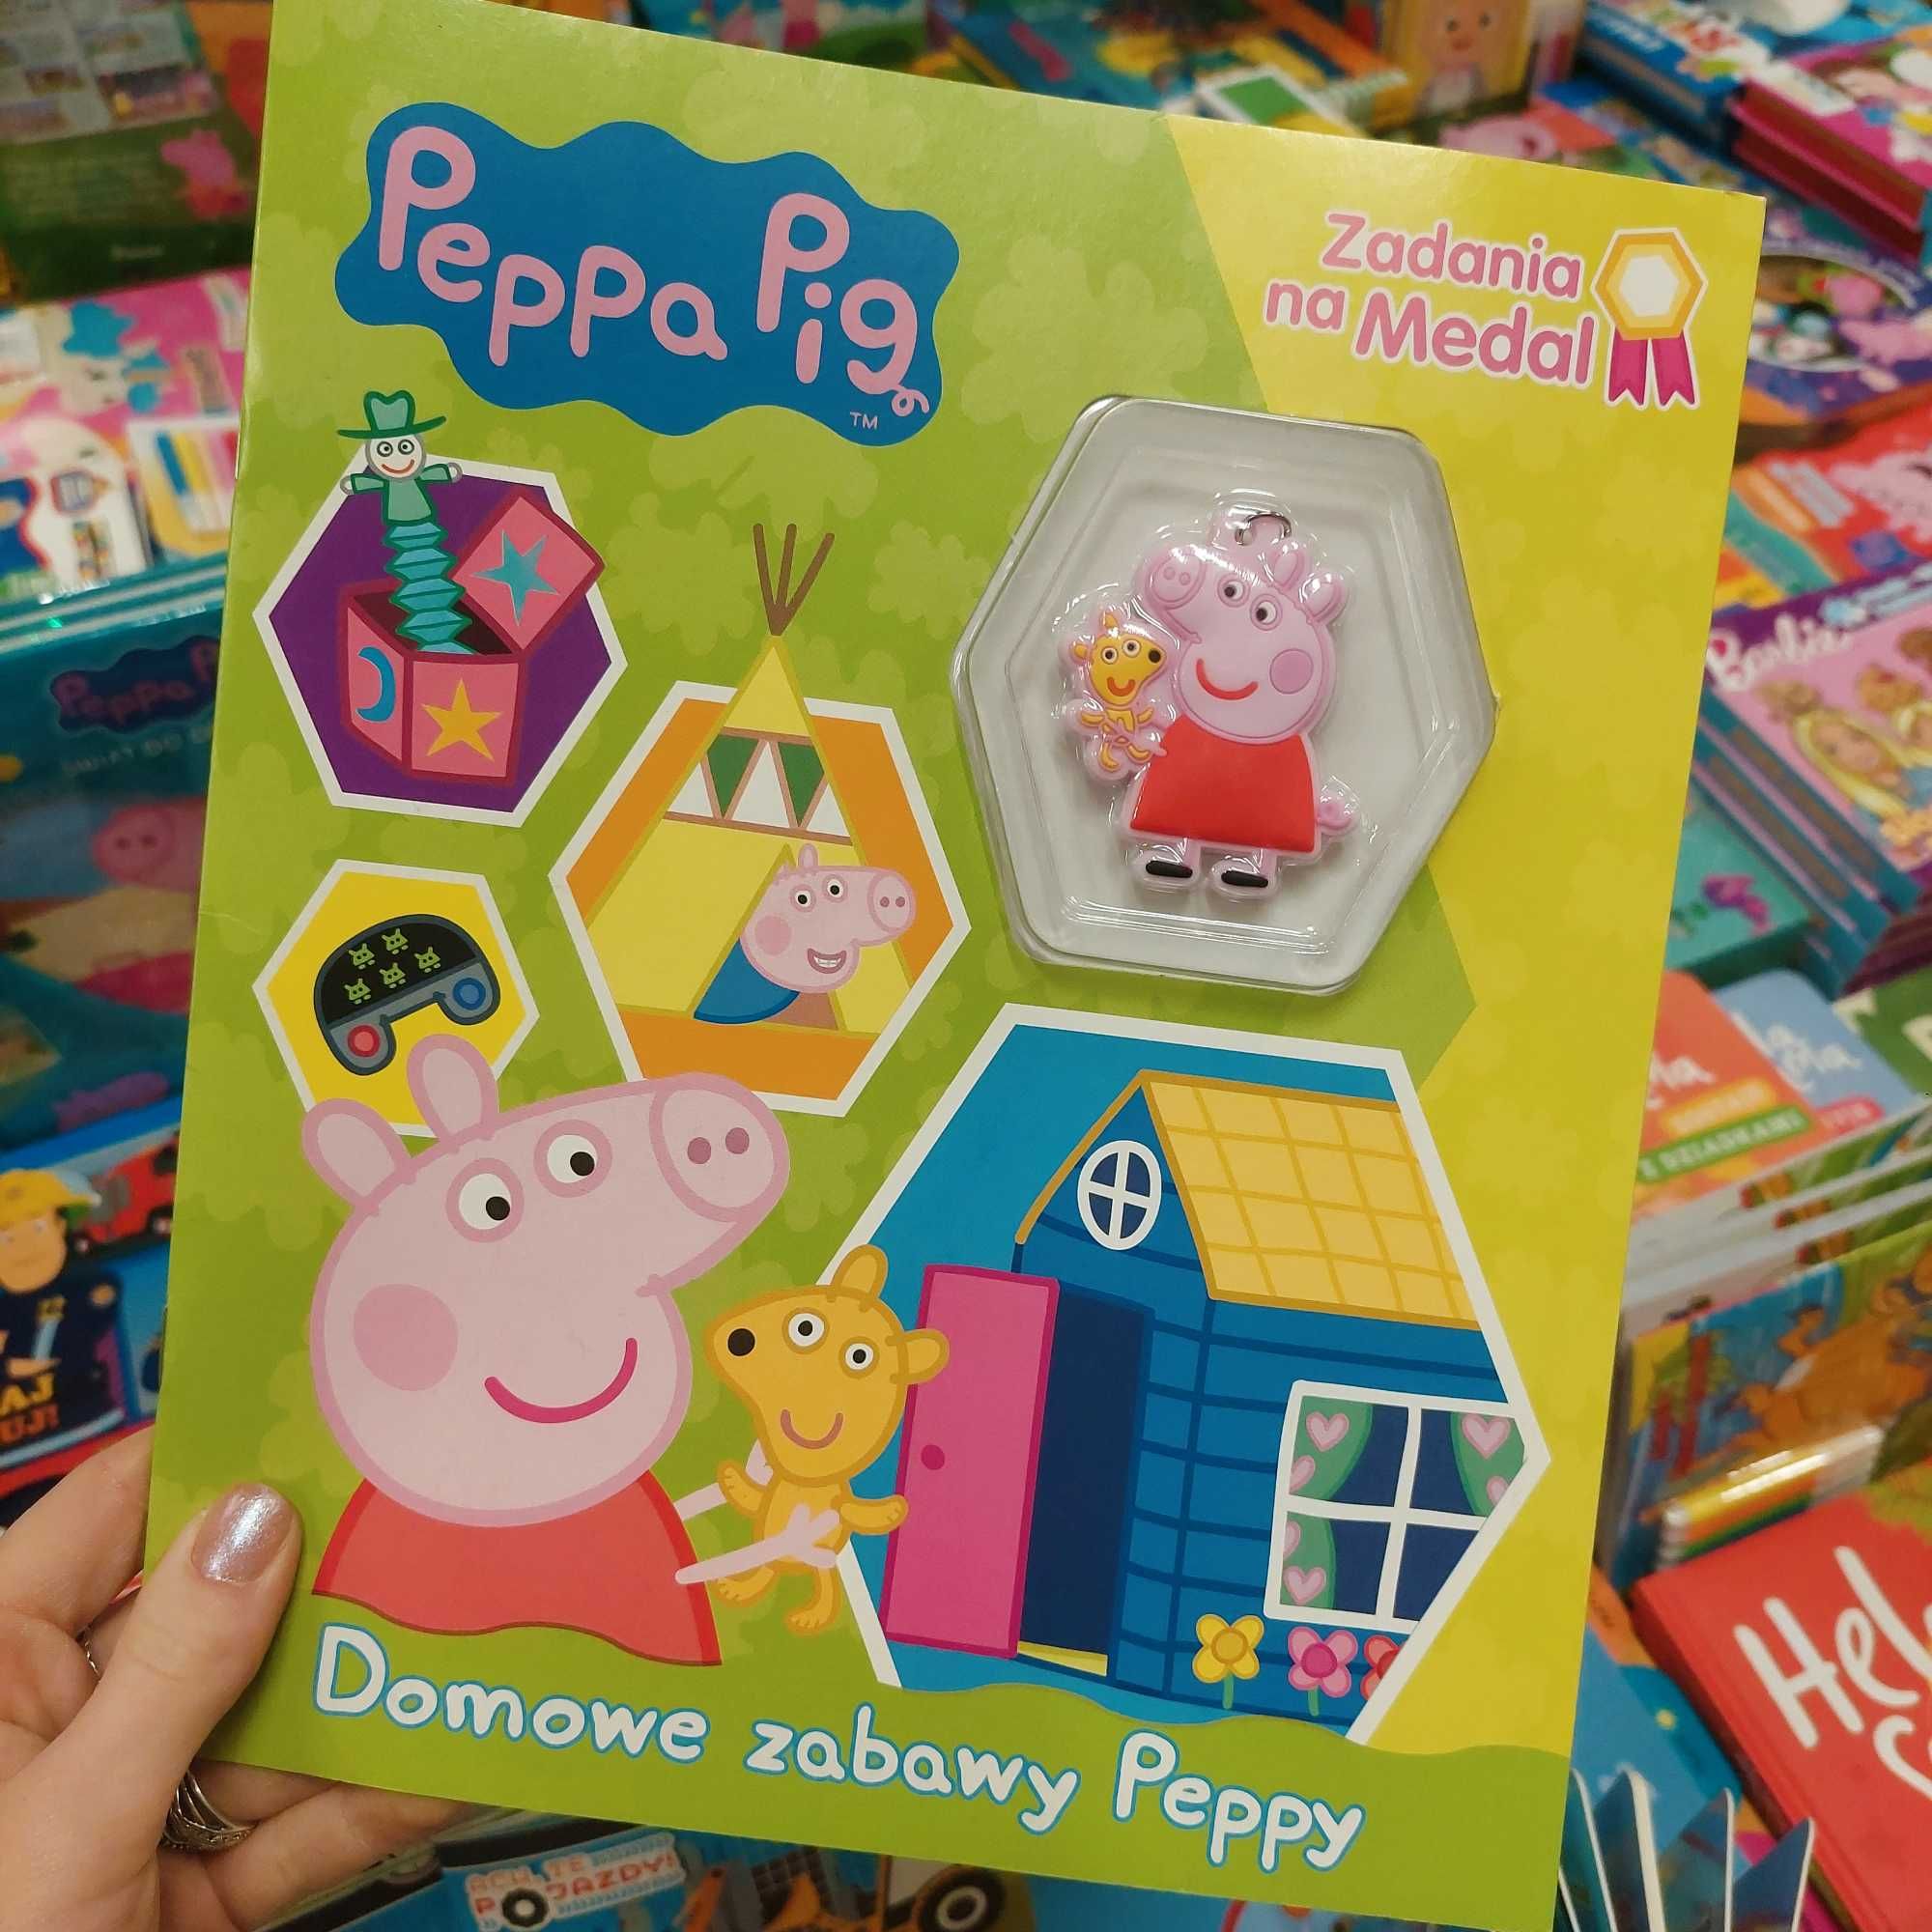 Peppa Pig z breloczkiem - zadania na medal - Domowe zabawy Peppy